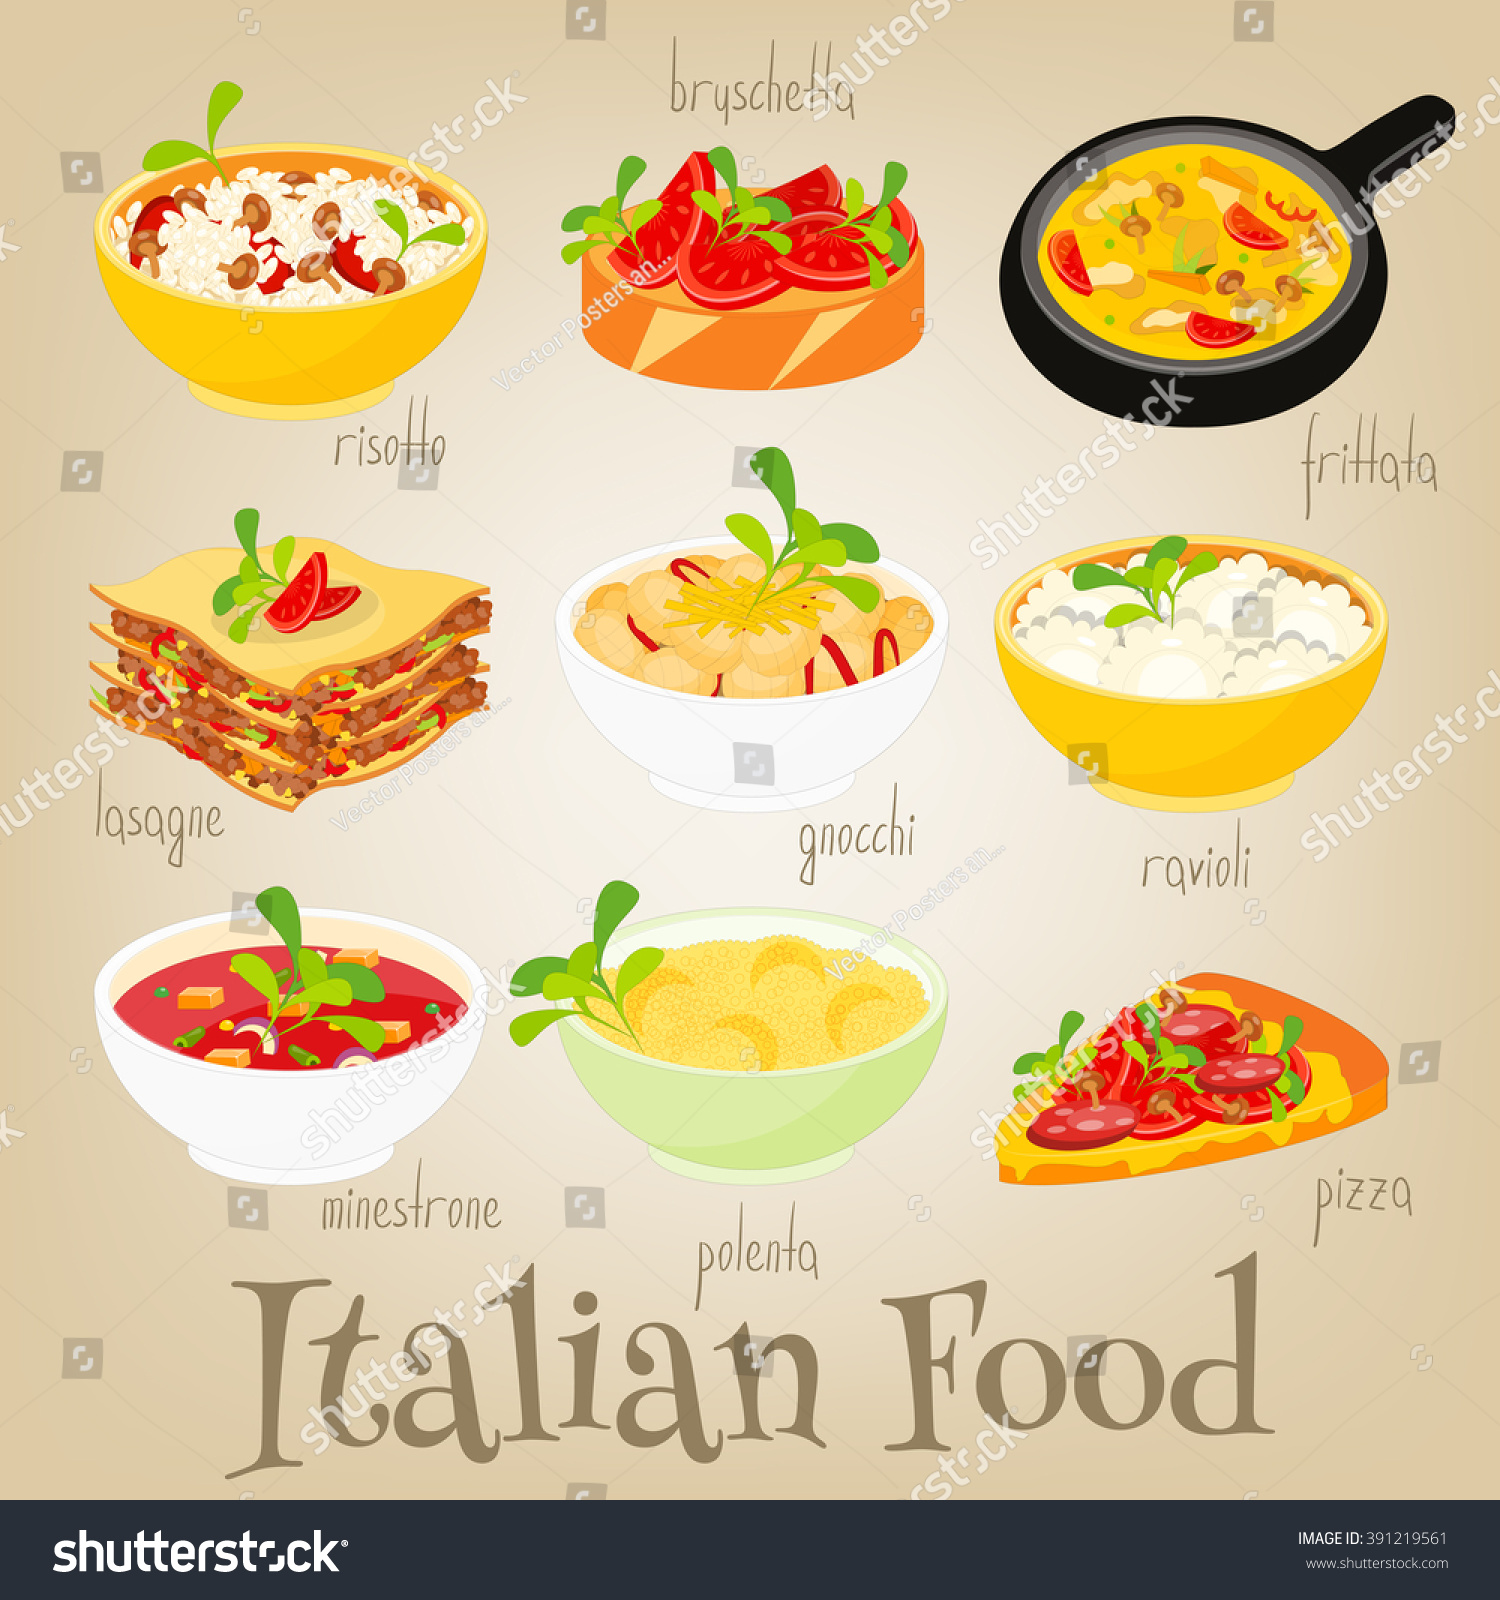 Aimant de réfrigérateur classique avec illustration de nourriture et boissons. Cuisine italienne